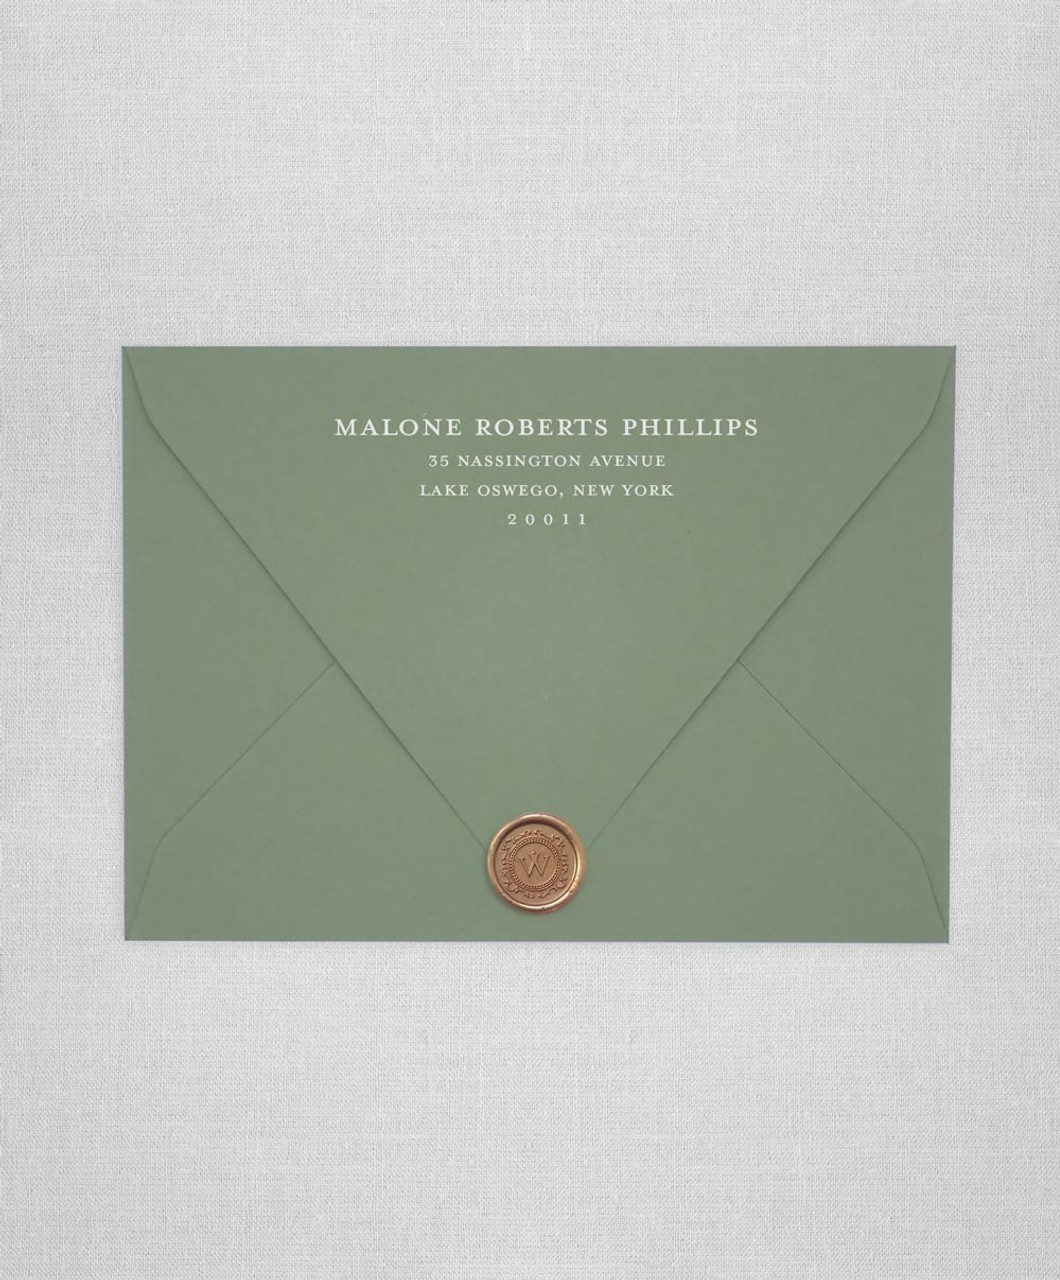 Monogram Return Address Wedding Envelope Seal